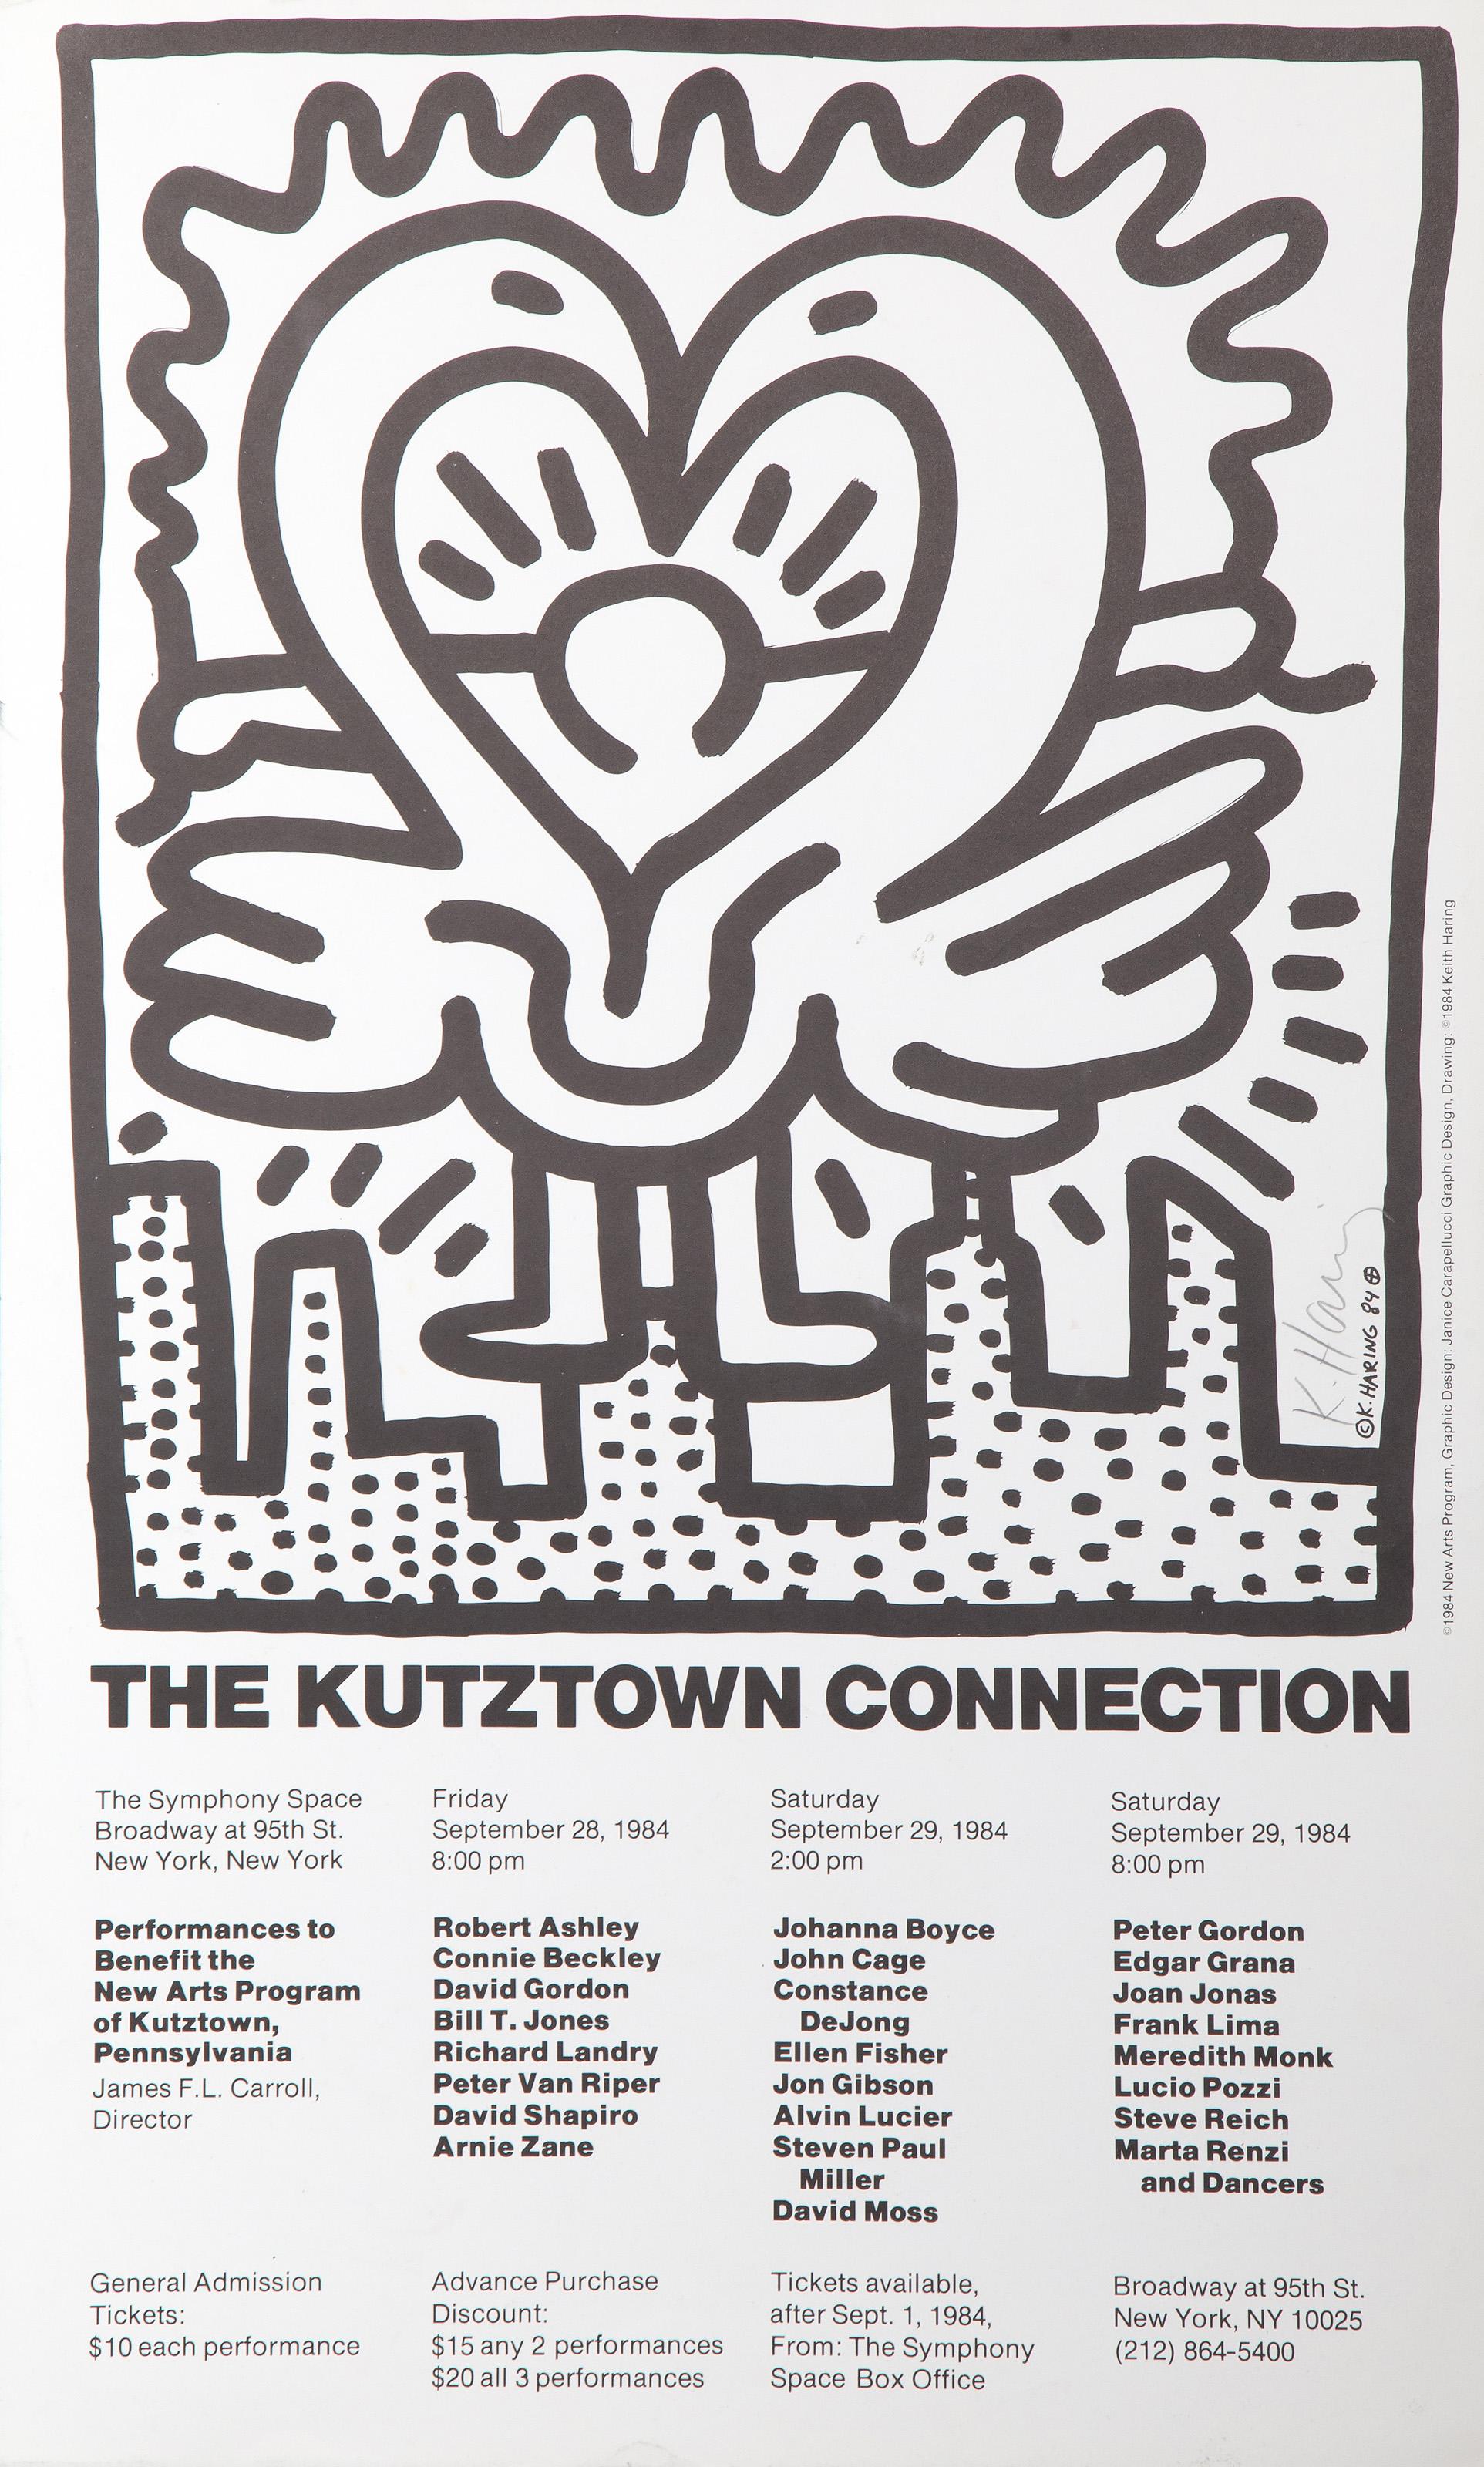 Affiche d'exposition : La connexion Kutztown 1984
Keith Haring (après), Américain (1958-1990)
Date : 1984
Affiche sur papier vélin, signée et datée dans la planche, signée au crayon
Taille : 33 x 20 in. (83.82 x 50.8 cm)
Éditeur : New Arts Program,